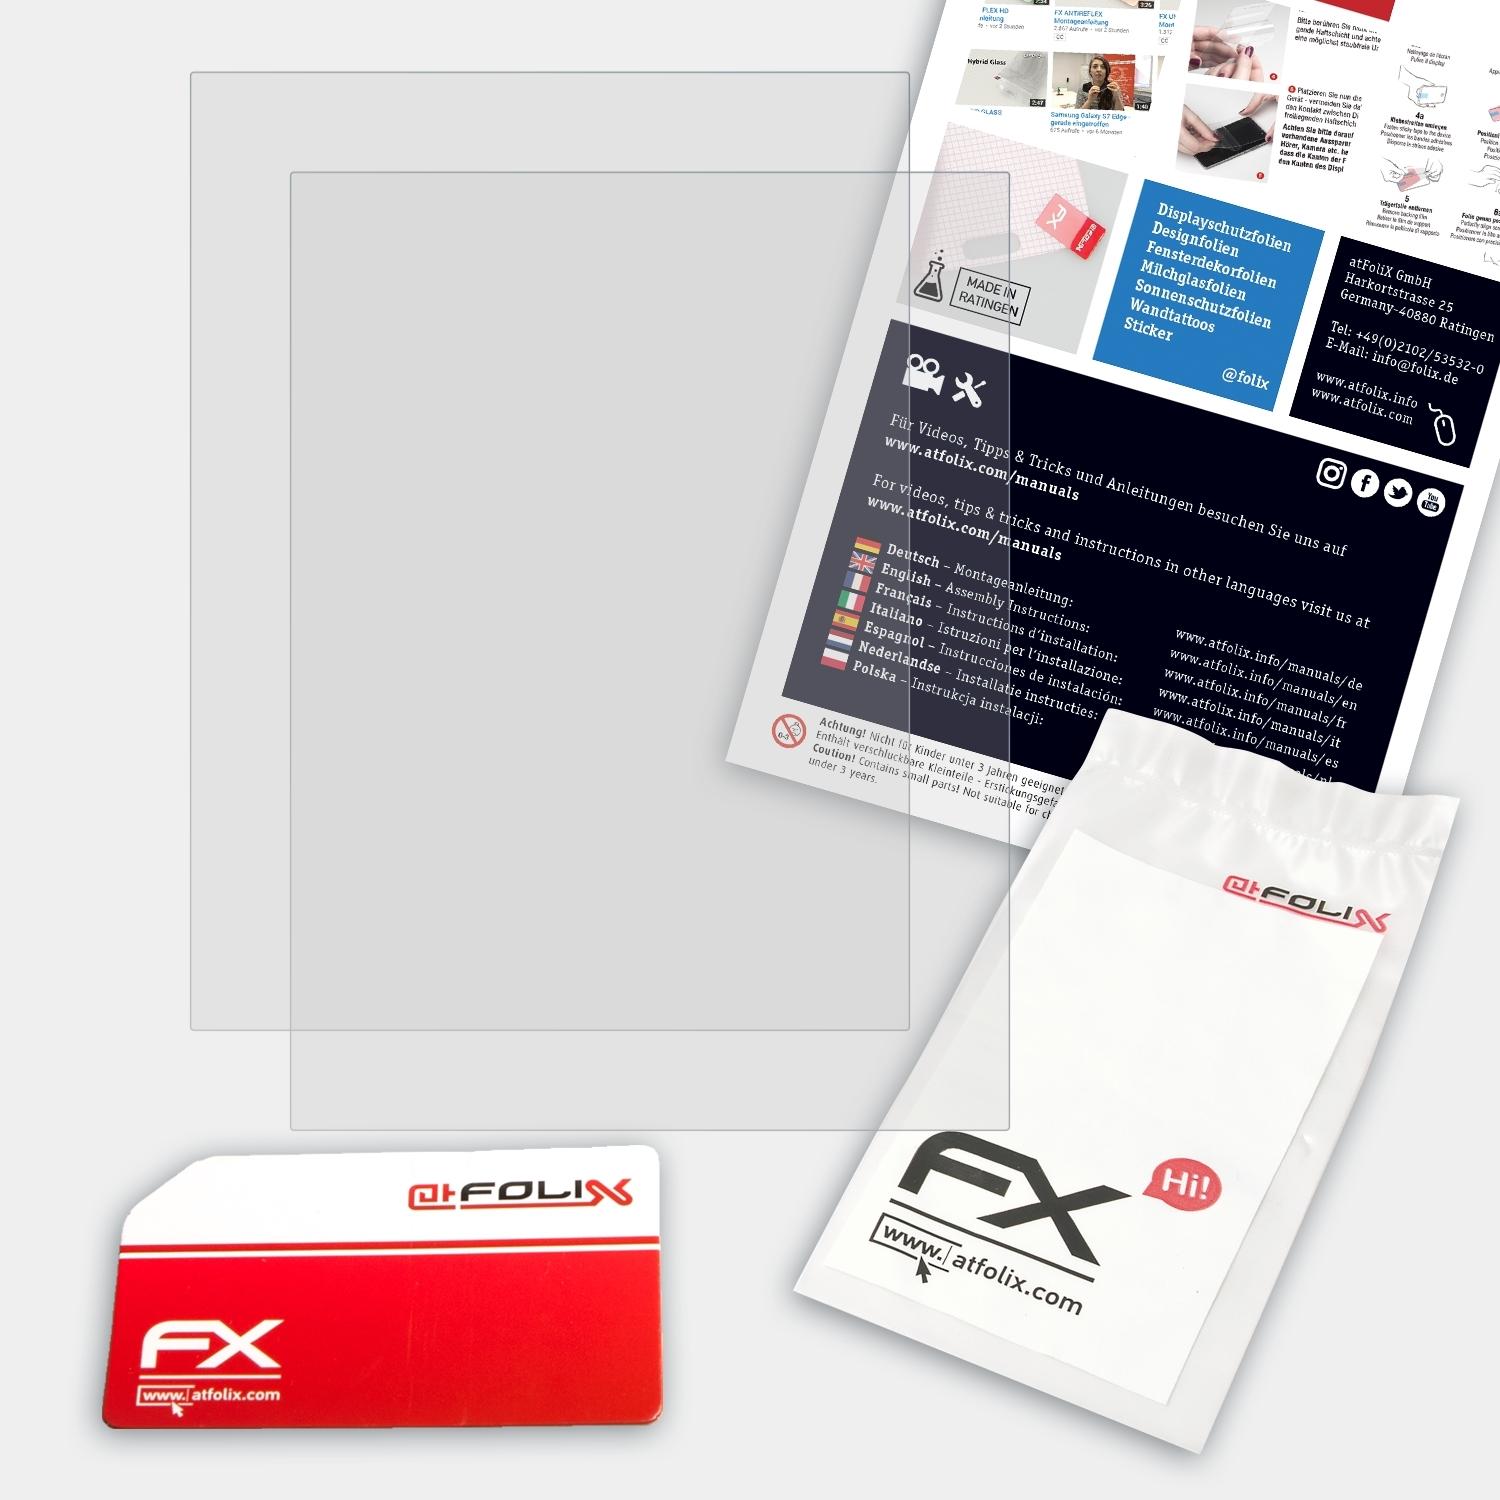 ATFOLIX 2x FX-Antireflex Displayschutz(für Kobo 2) Edition Aura H2O